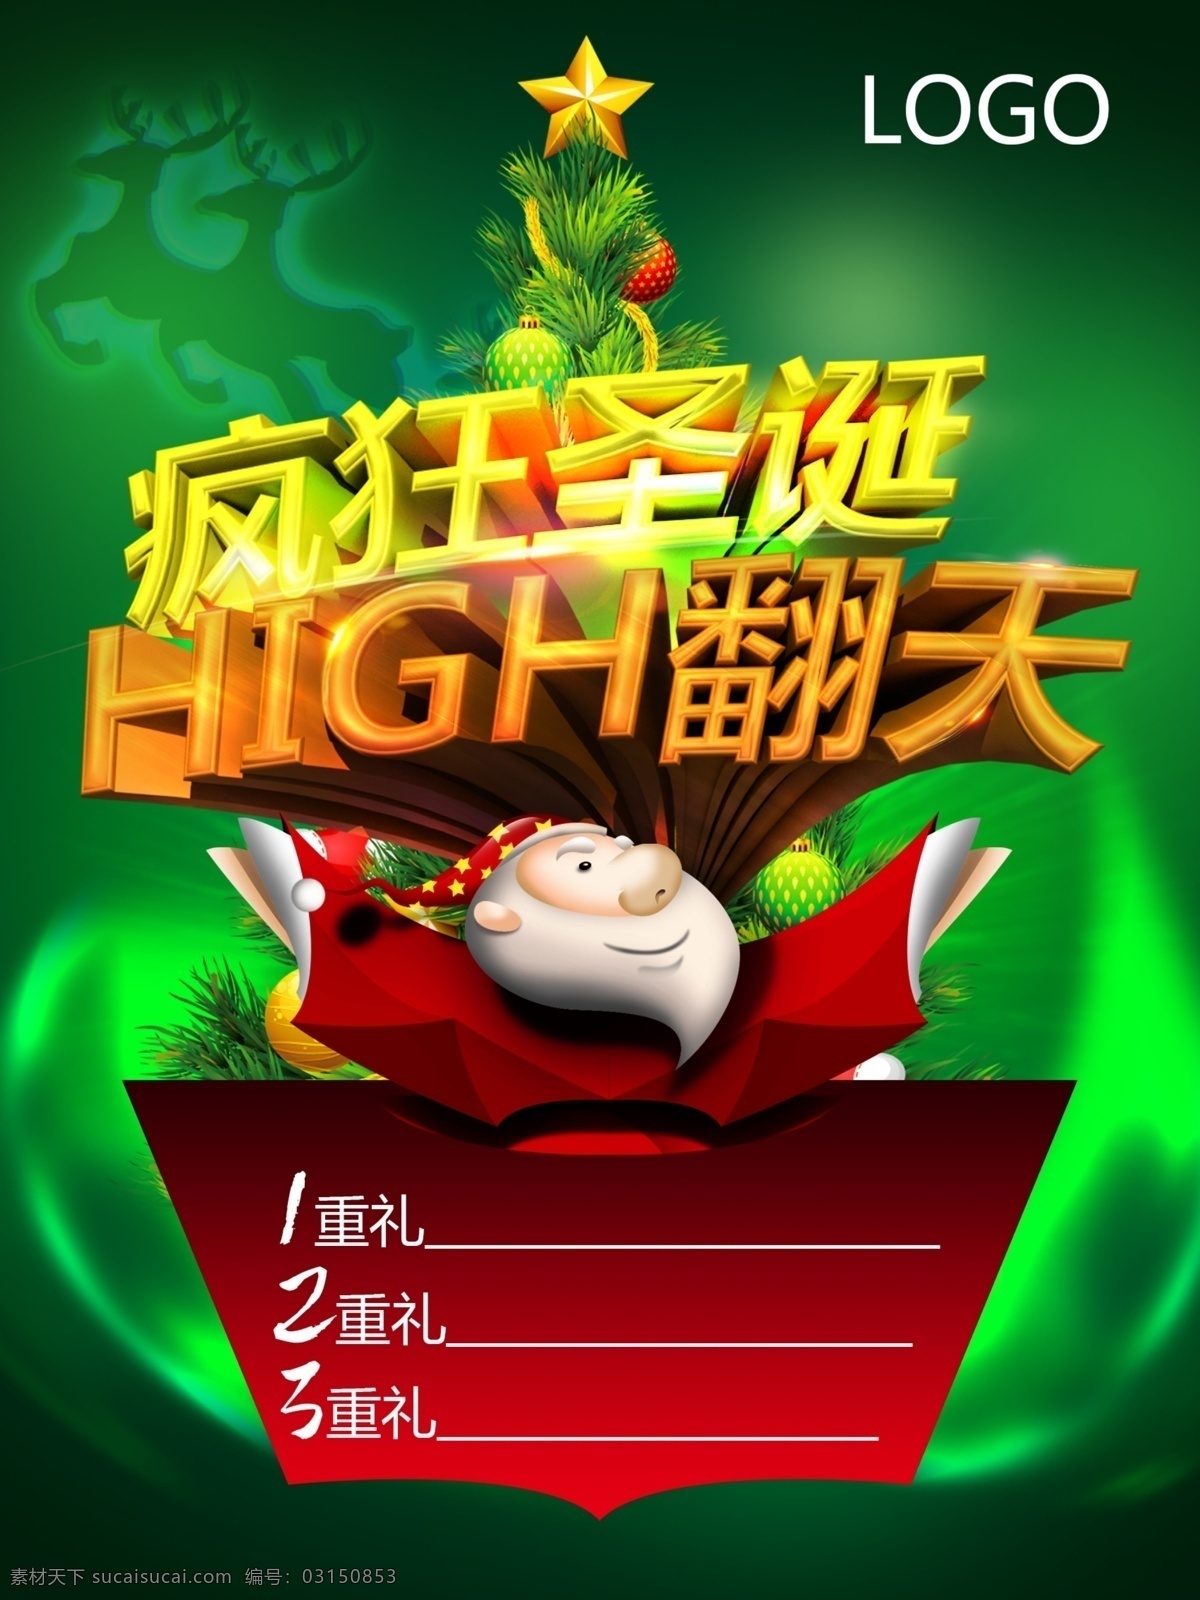 疯狂 圣诞 海报 促销 打折 欢乐 节日 惊喜 卡通 绿 麋鹿 树 原创设计 原创海报